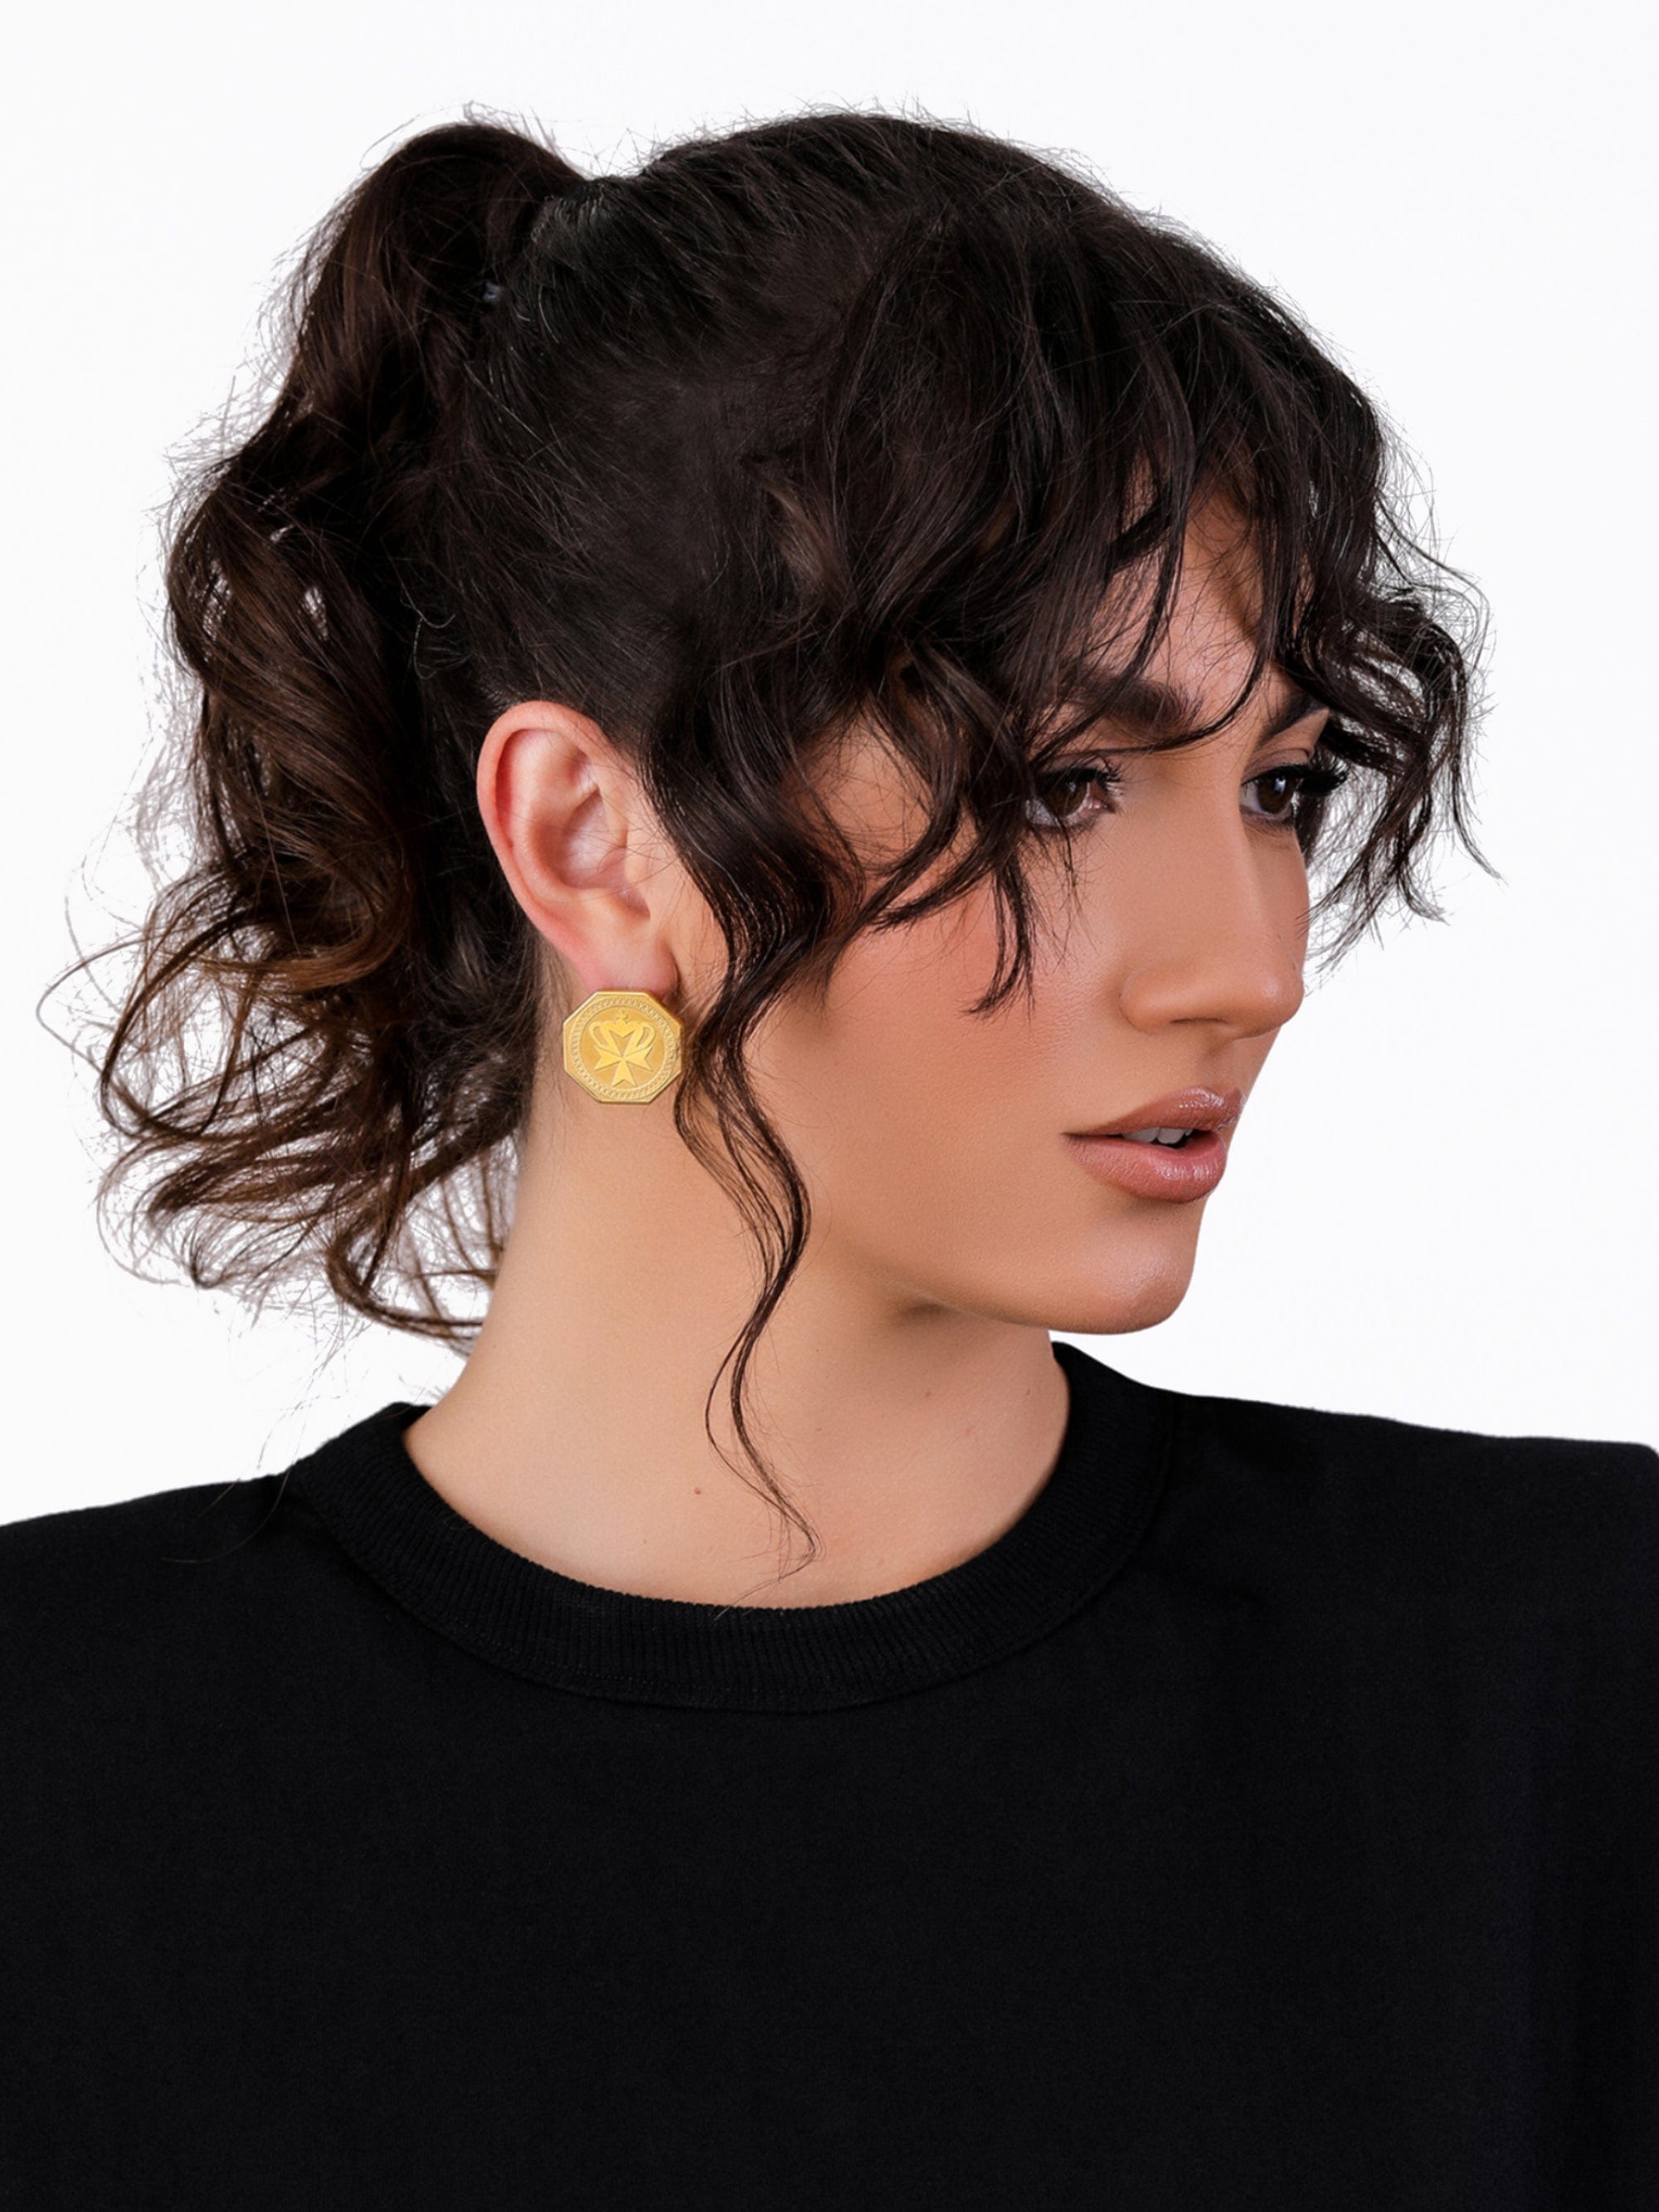 Sultana-Malta EARRINGS Crown Medal Stud Earrings